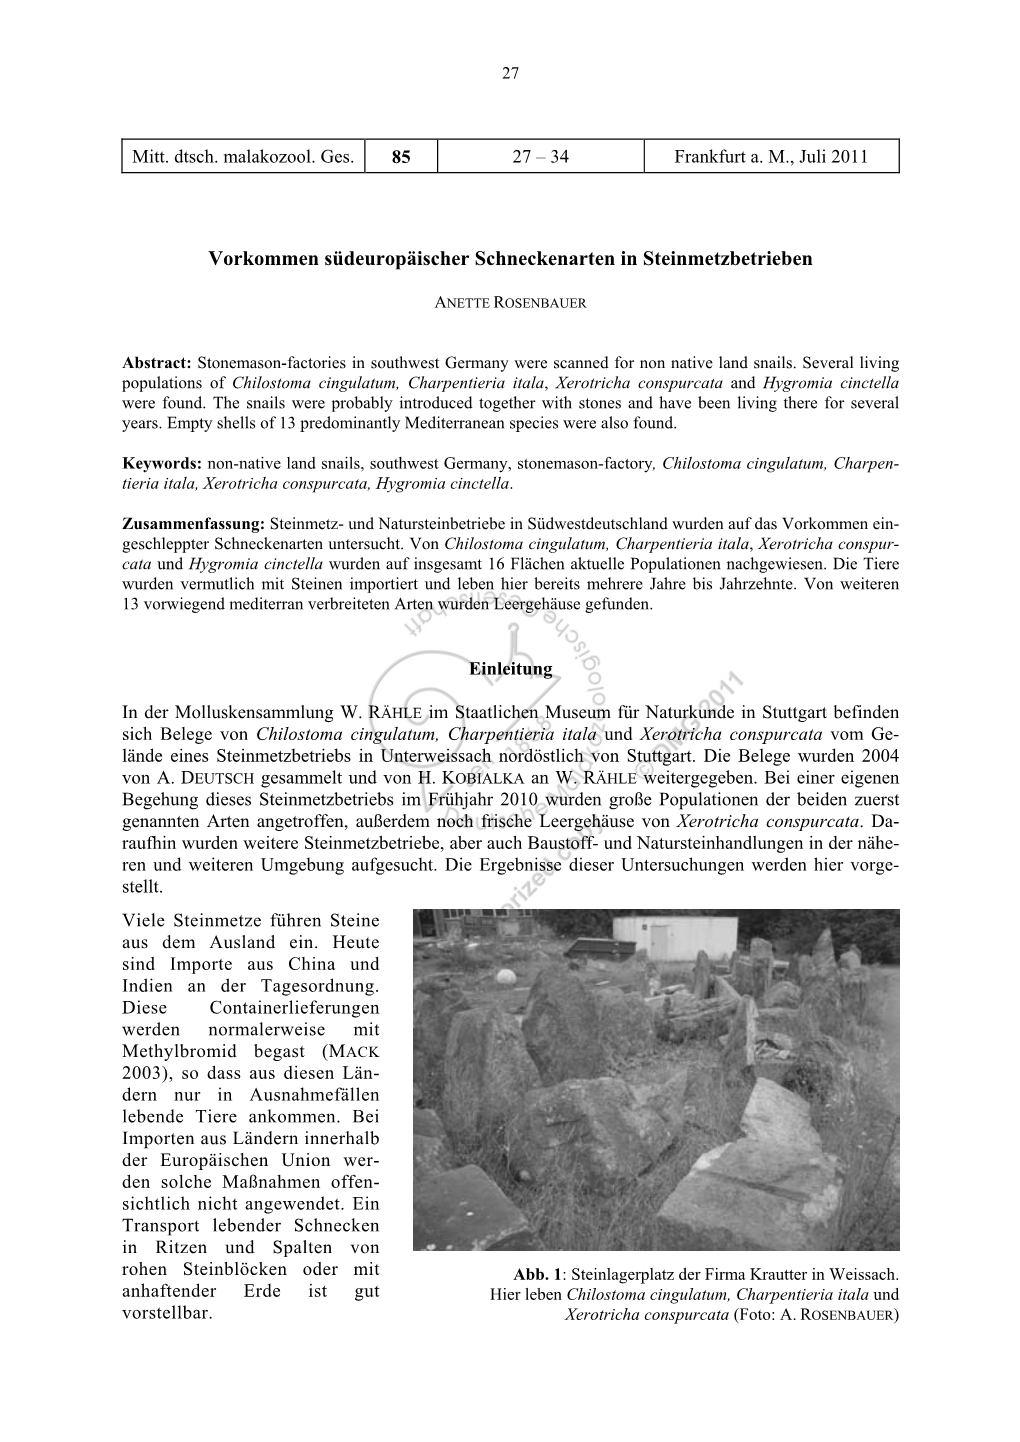 ROSENBAUER, A.: Vorkommen Südeuropäischer Schneckenarten in Steinmetzbetrieben